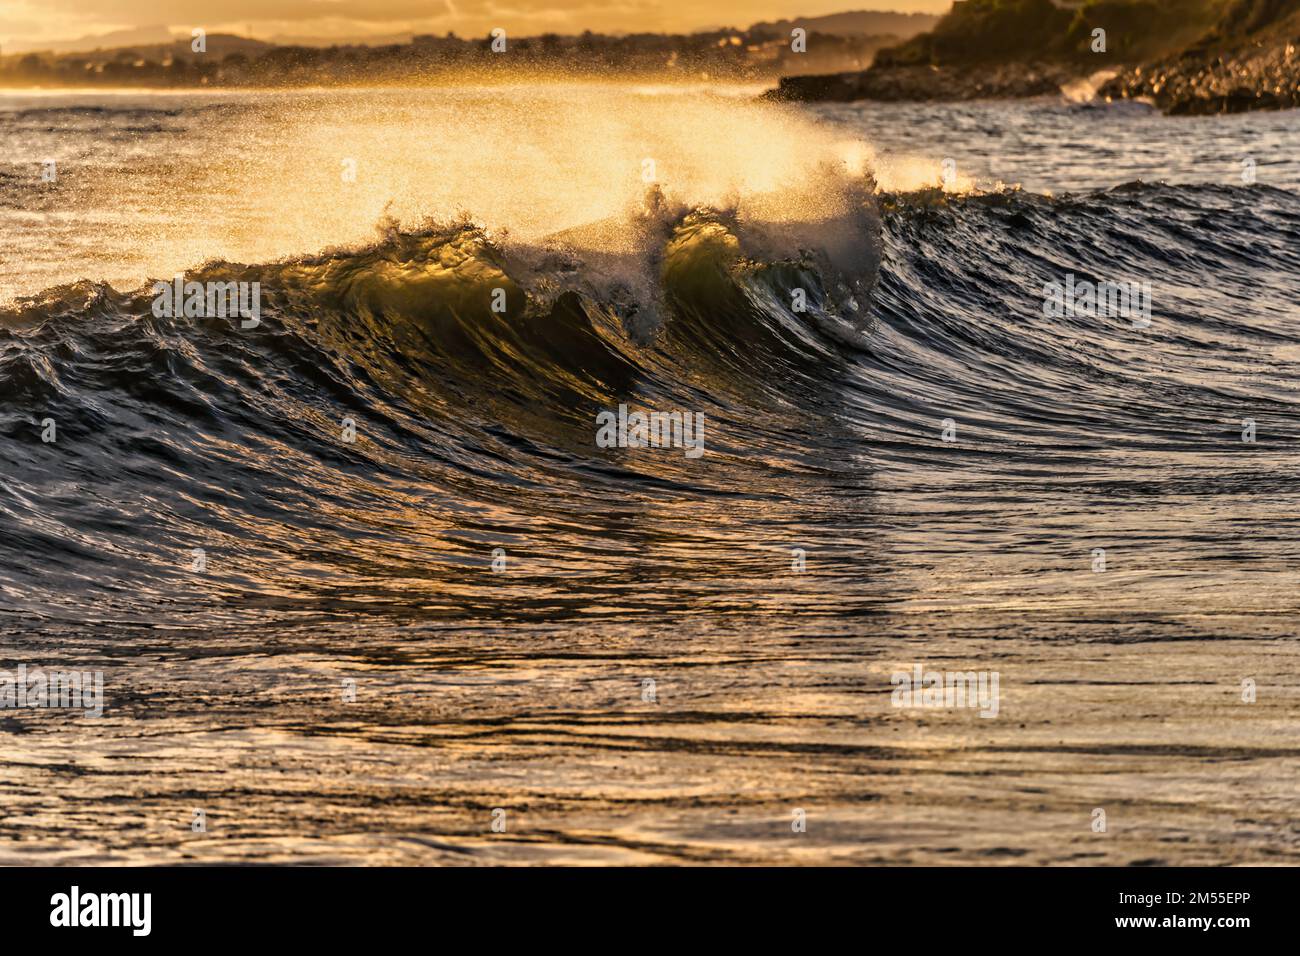 Saubere Meereswellen, die Wasser spritzen, während sie sich im Sommer bei Sonnenuntergang an der Küste entlang Rollen Stockfoto